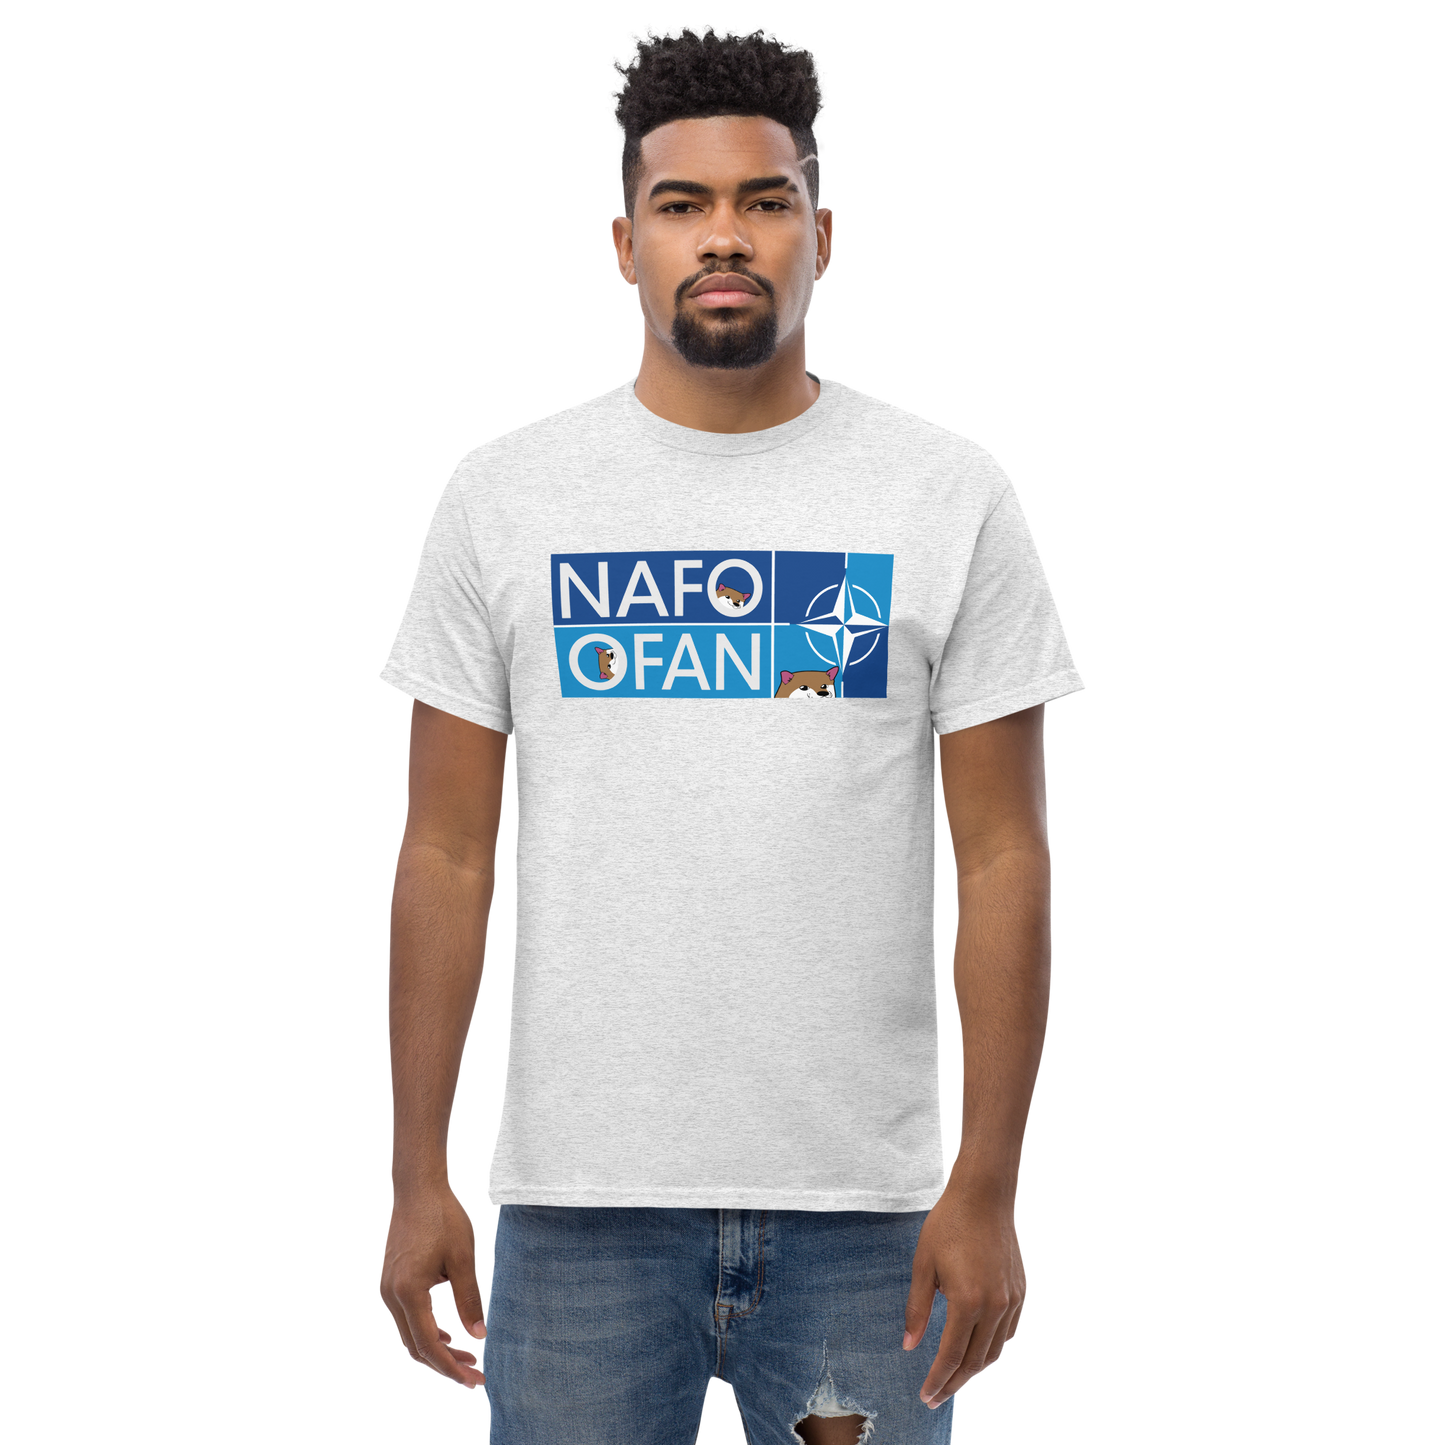 NAFO OFAN Classic T-Shirt